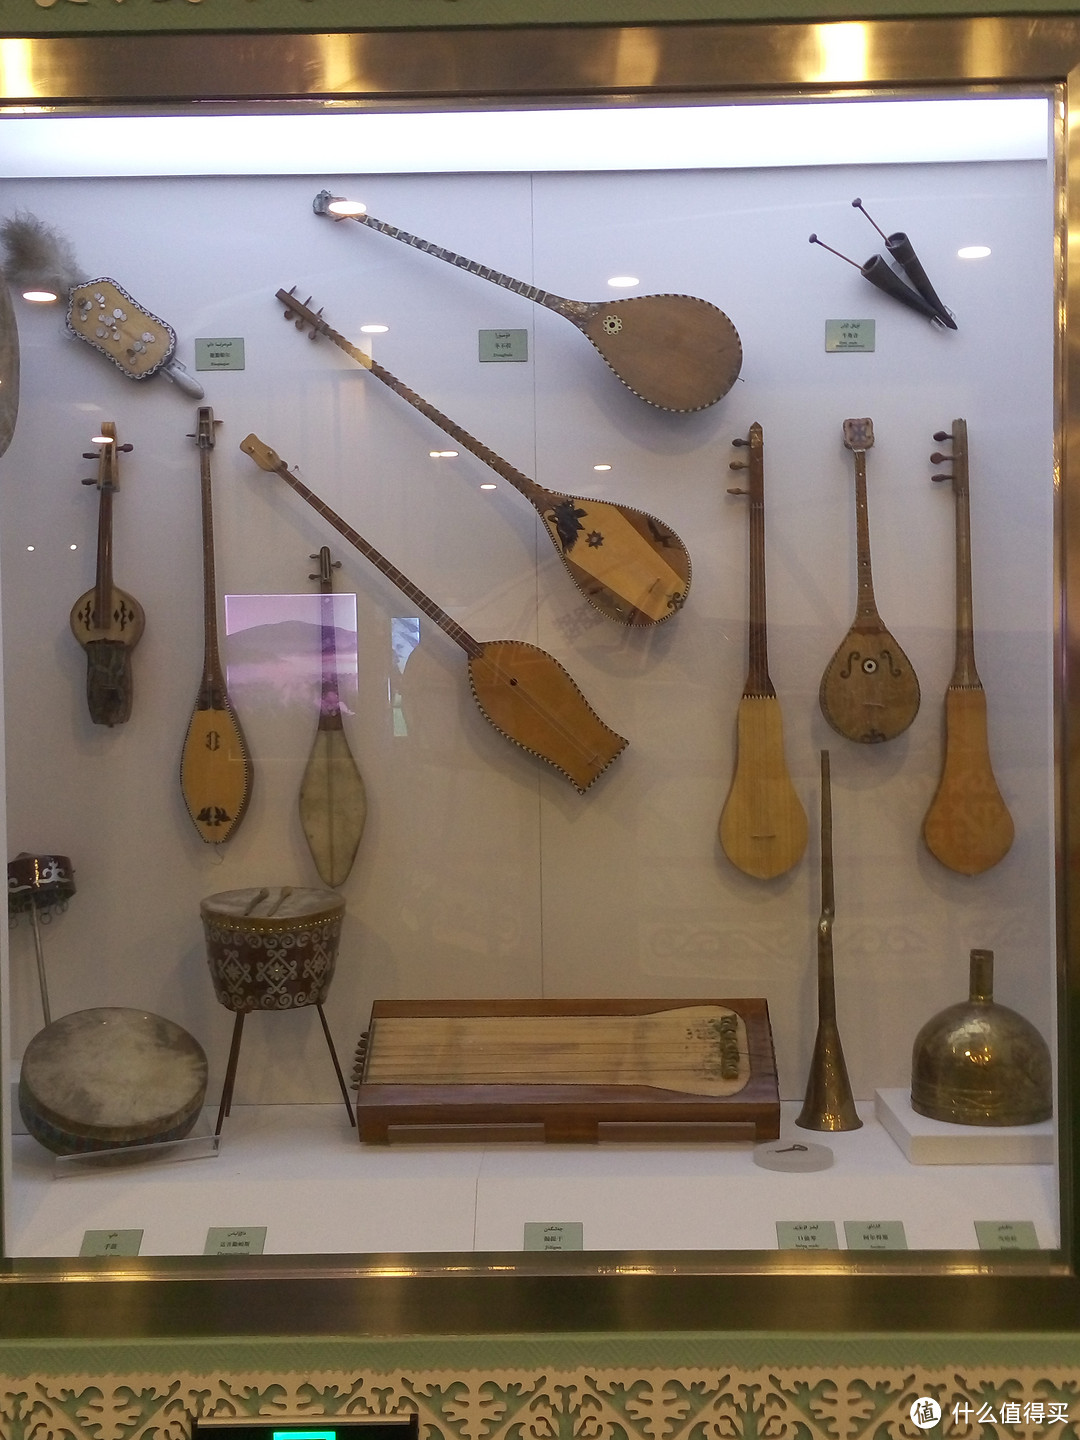 下面上一些新疆特色的民族乐器弹拨尔,热瓦普,都塔尔卡龙琴艾捷克胡西